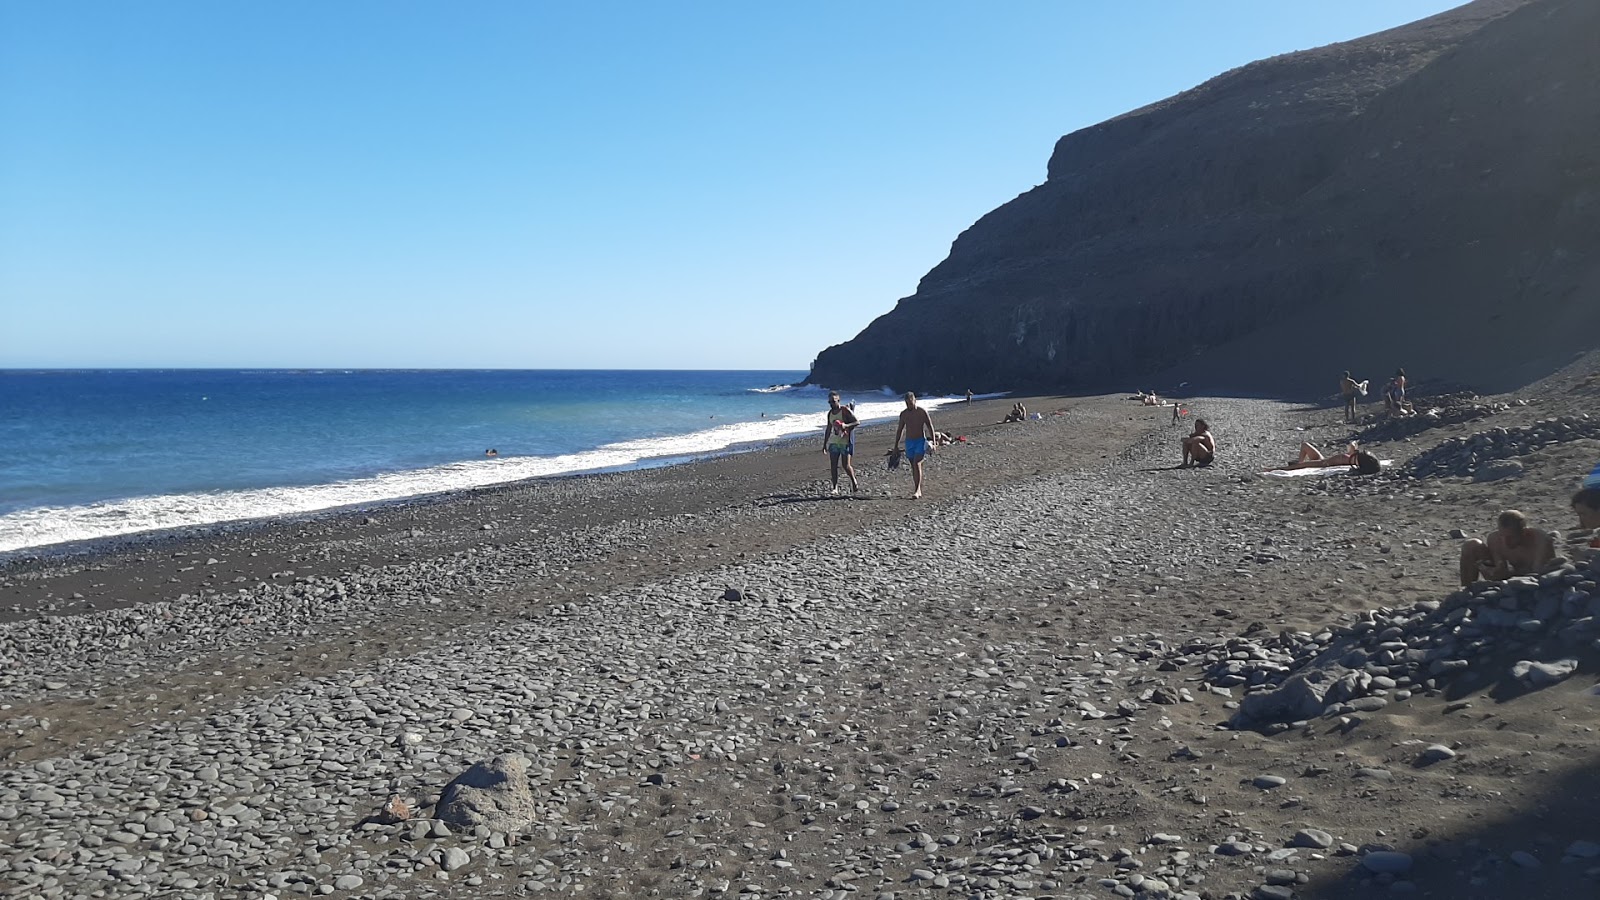 Foto von Playa de la Arena mit grauer sand&kies Oberfläche